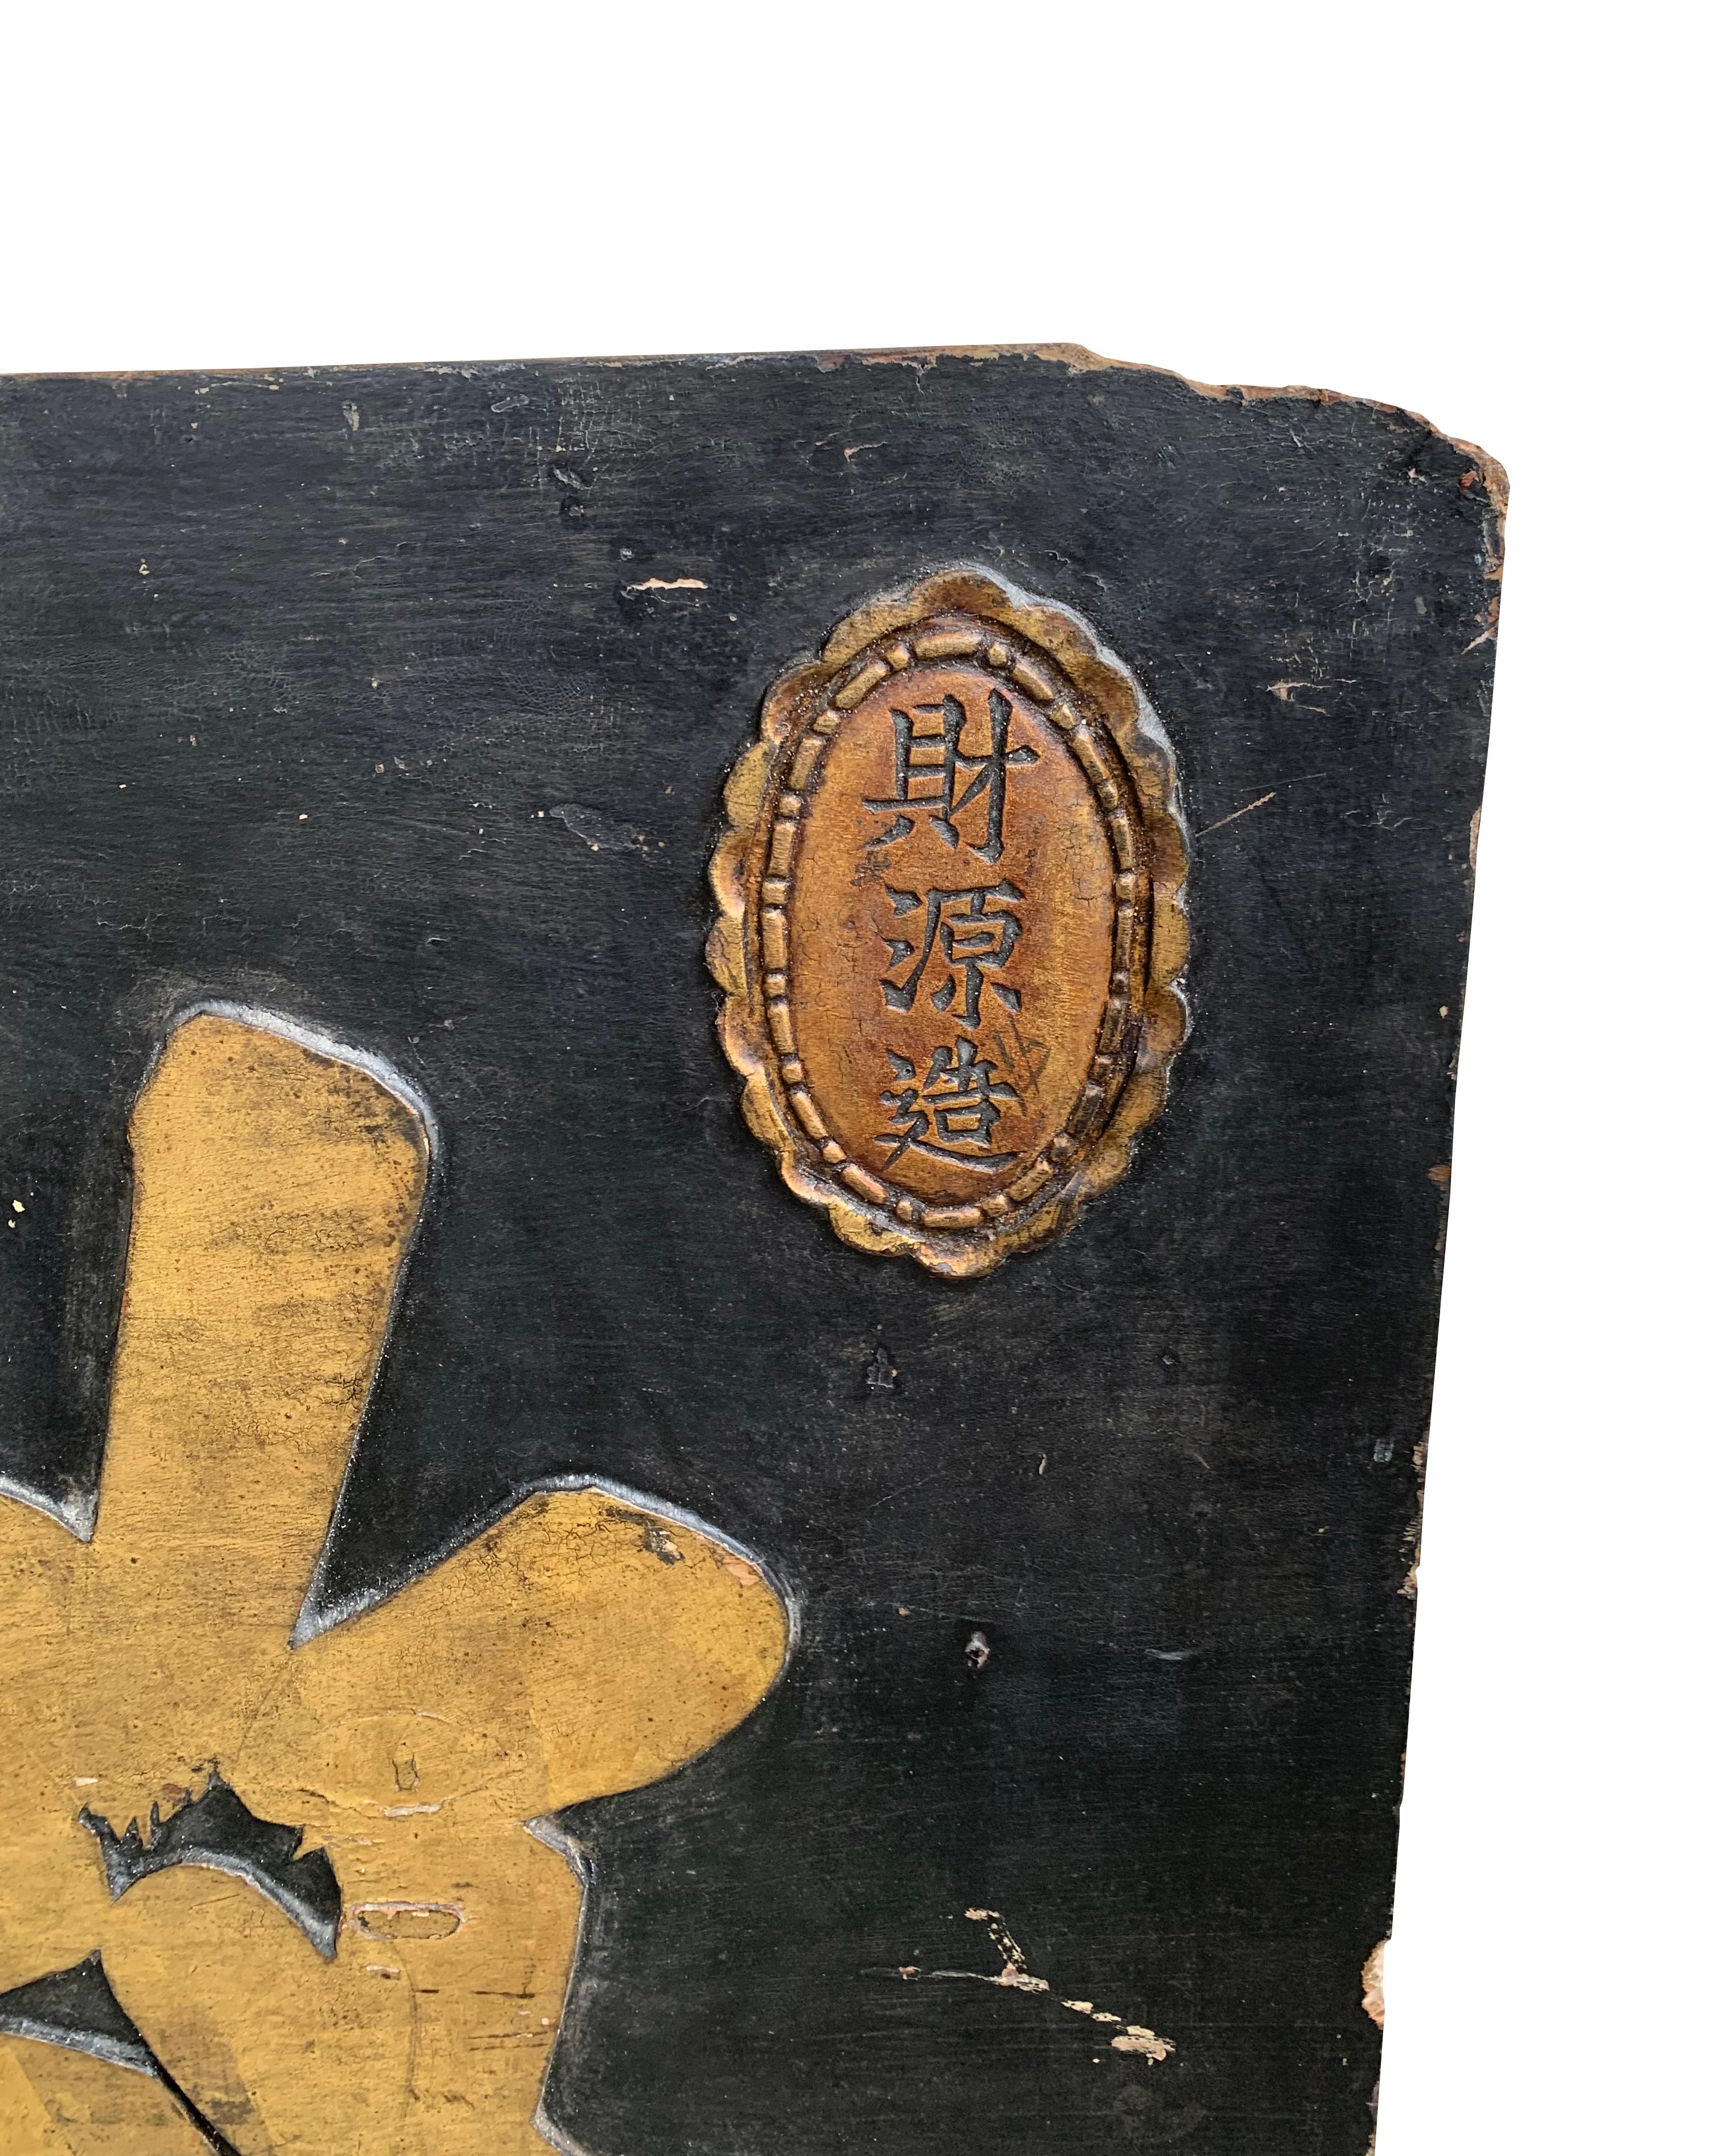 Mit einem holzfarbenen Sockel hebt dieses Schild (das komplett aus Holz gefertigt ist) 3 große goldfarbene chinesische Schriftzeichen hervor. Das Schild stammt aus dem frühen 20. Jahrhundert und ist durch die Alterung des Holzes und das Verblassen